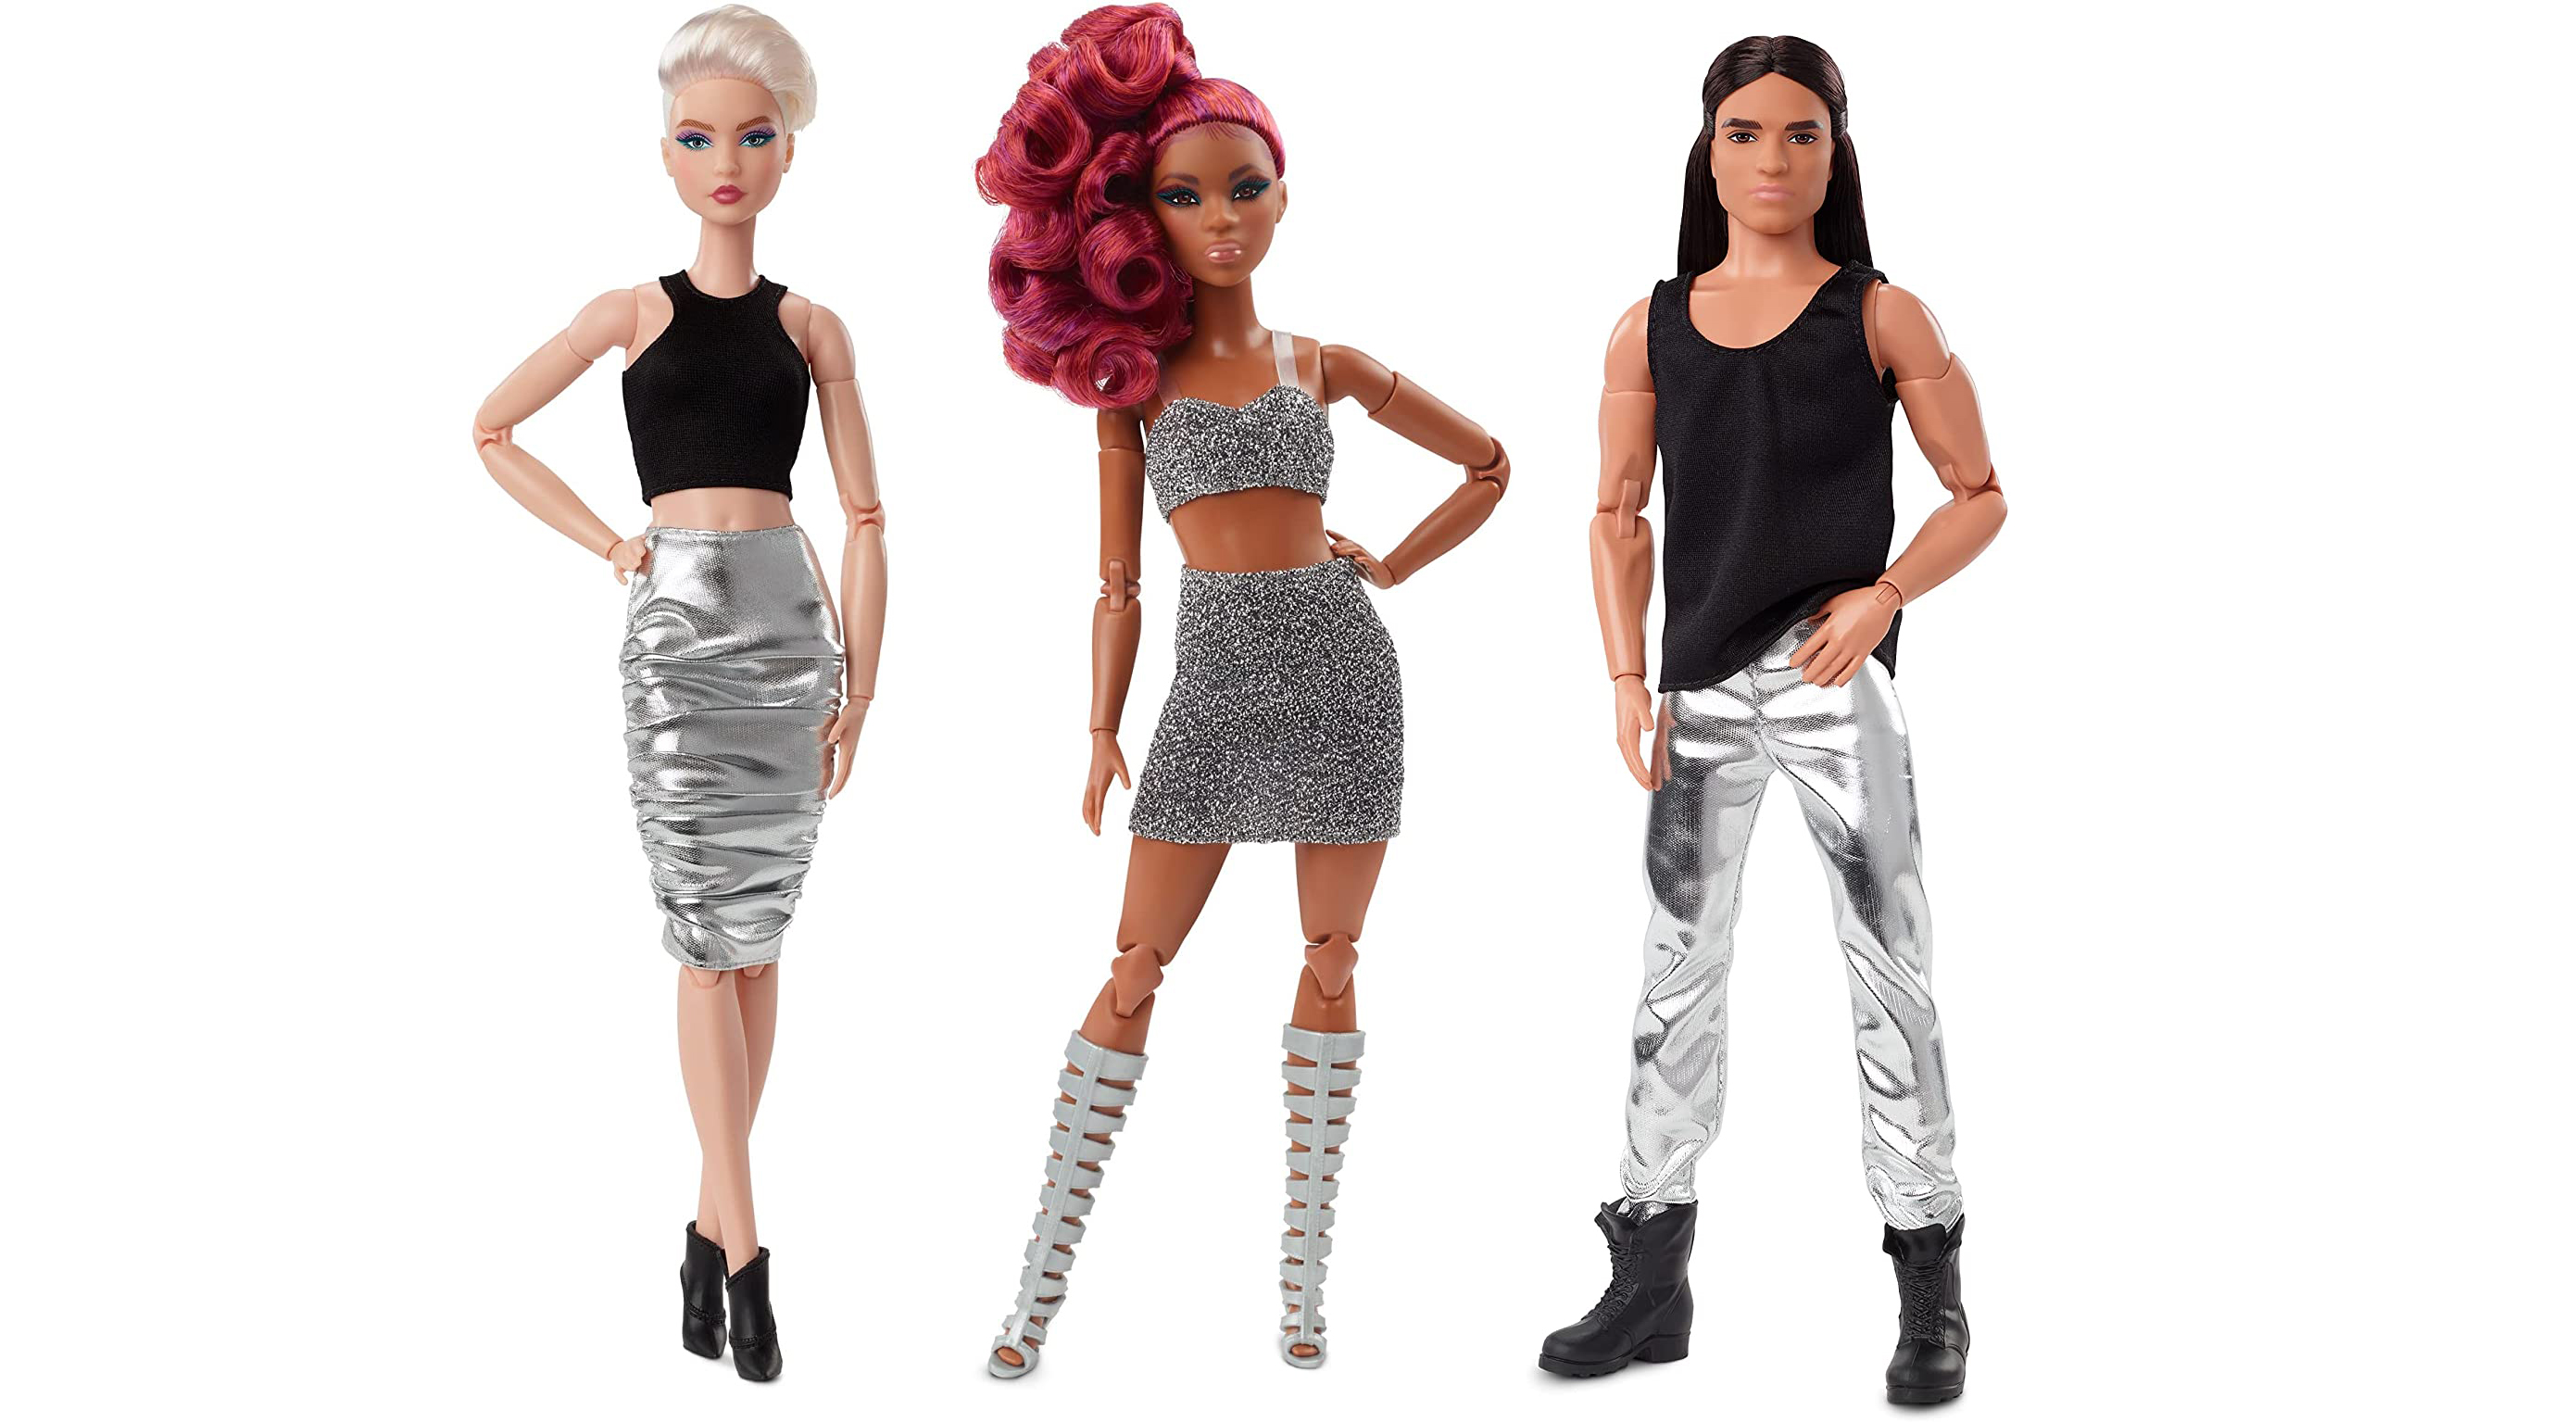 Nouvelles Barbie, curvy et autres 1638389829_youloveit_com_new_barbie_looks_2021_dolls2